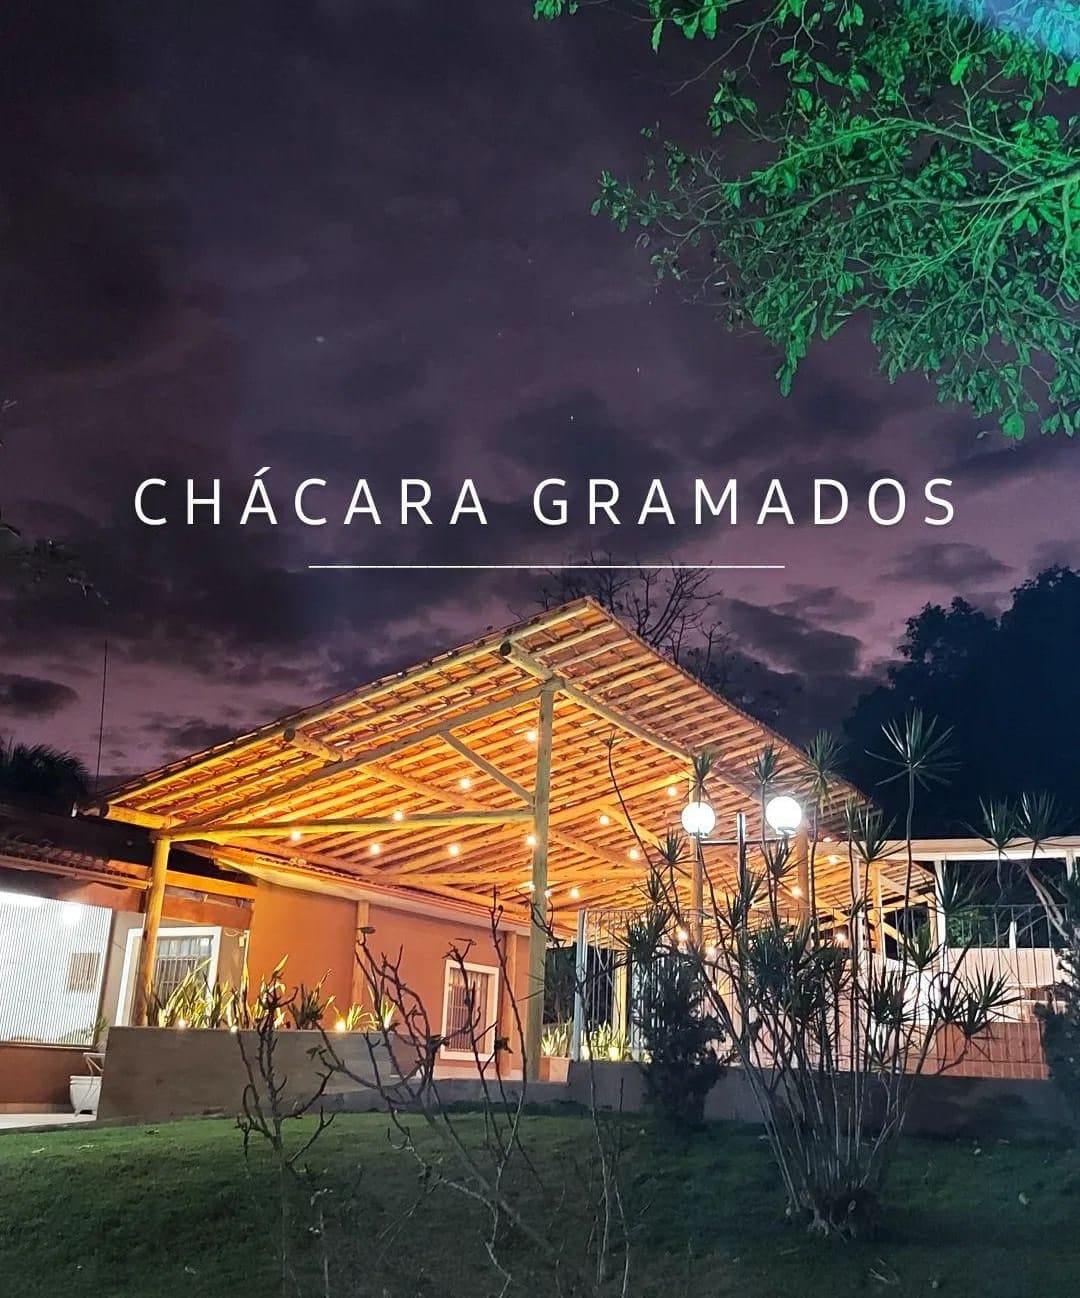 Chácara Gramados -活动与舒适